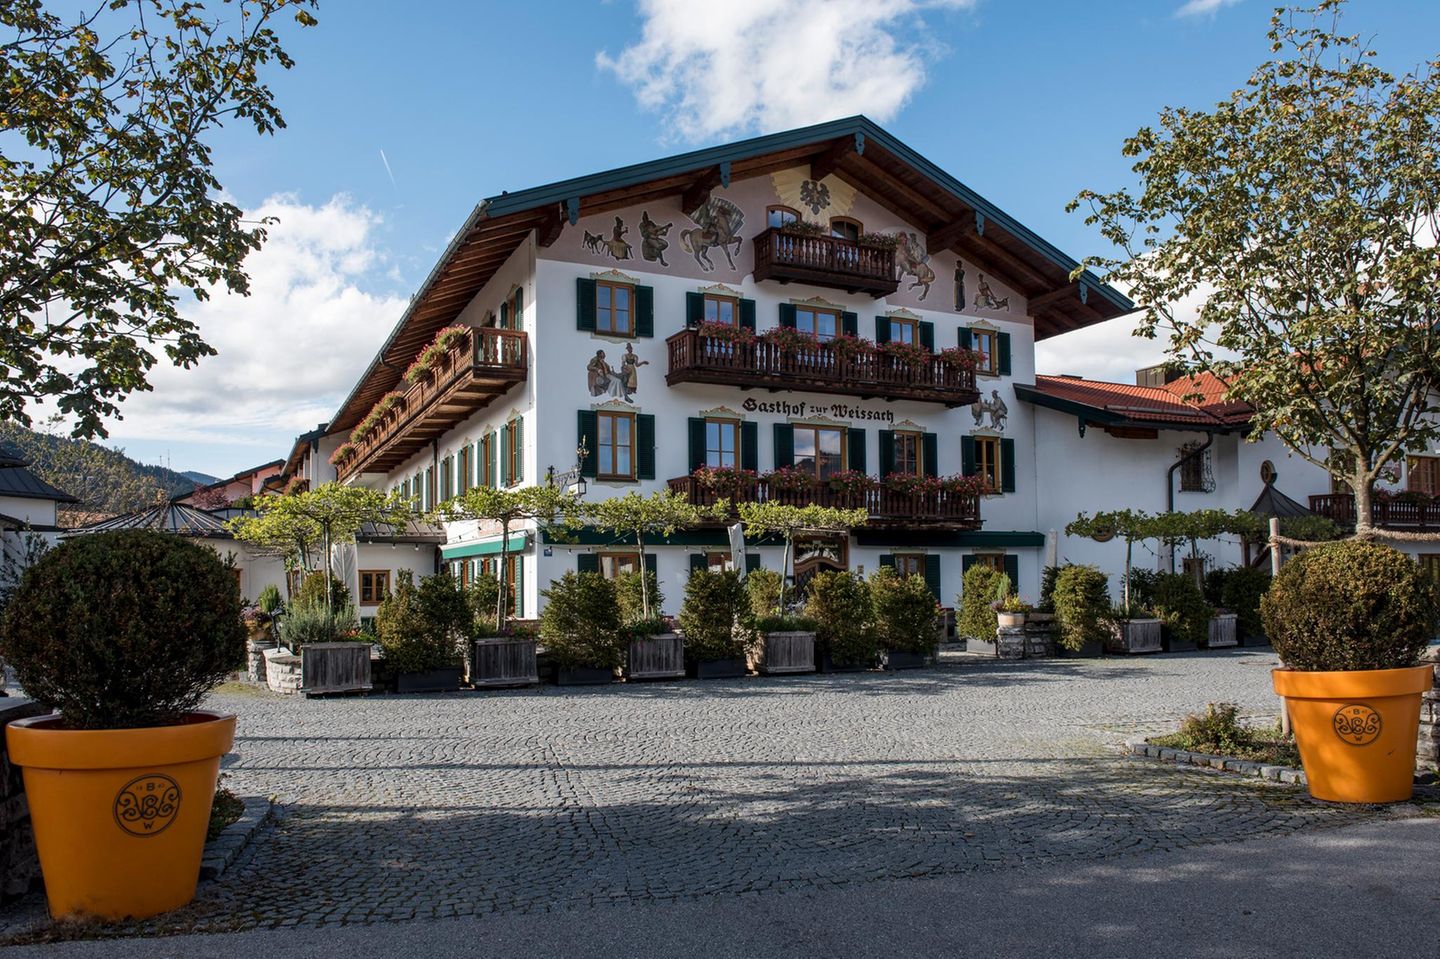 Mitten in der malerischen Natur Bayerns gelegen empfängt das luxuriöse Hotel Bachmair Weissach die Gäste zum GALA Buddy Weekend 2017.